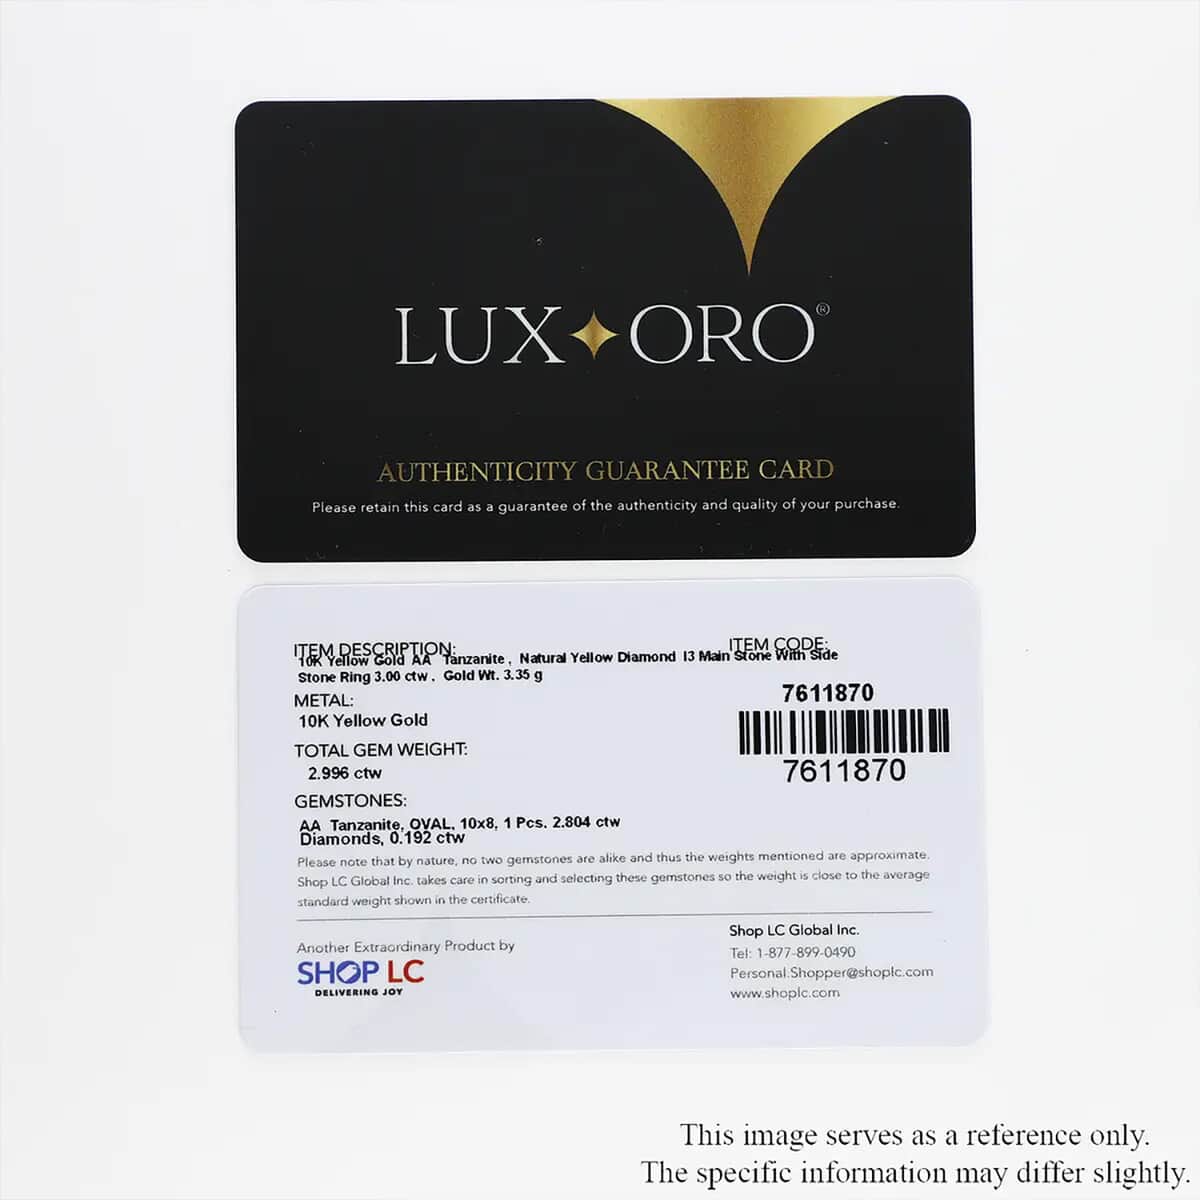 Luxoro 10K Yellow Gold Premium Tanzanite and I3 Natural Yellow Diamond Sunburst Ring (Size 5.0) 3.00 ctw image number 8